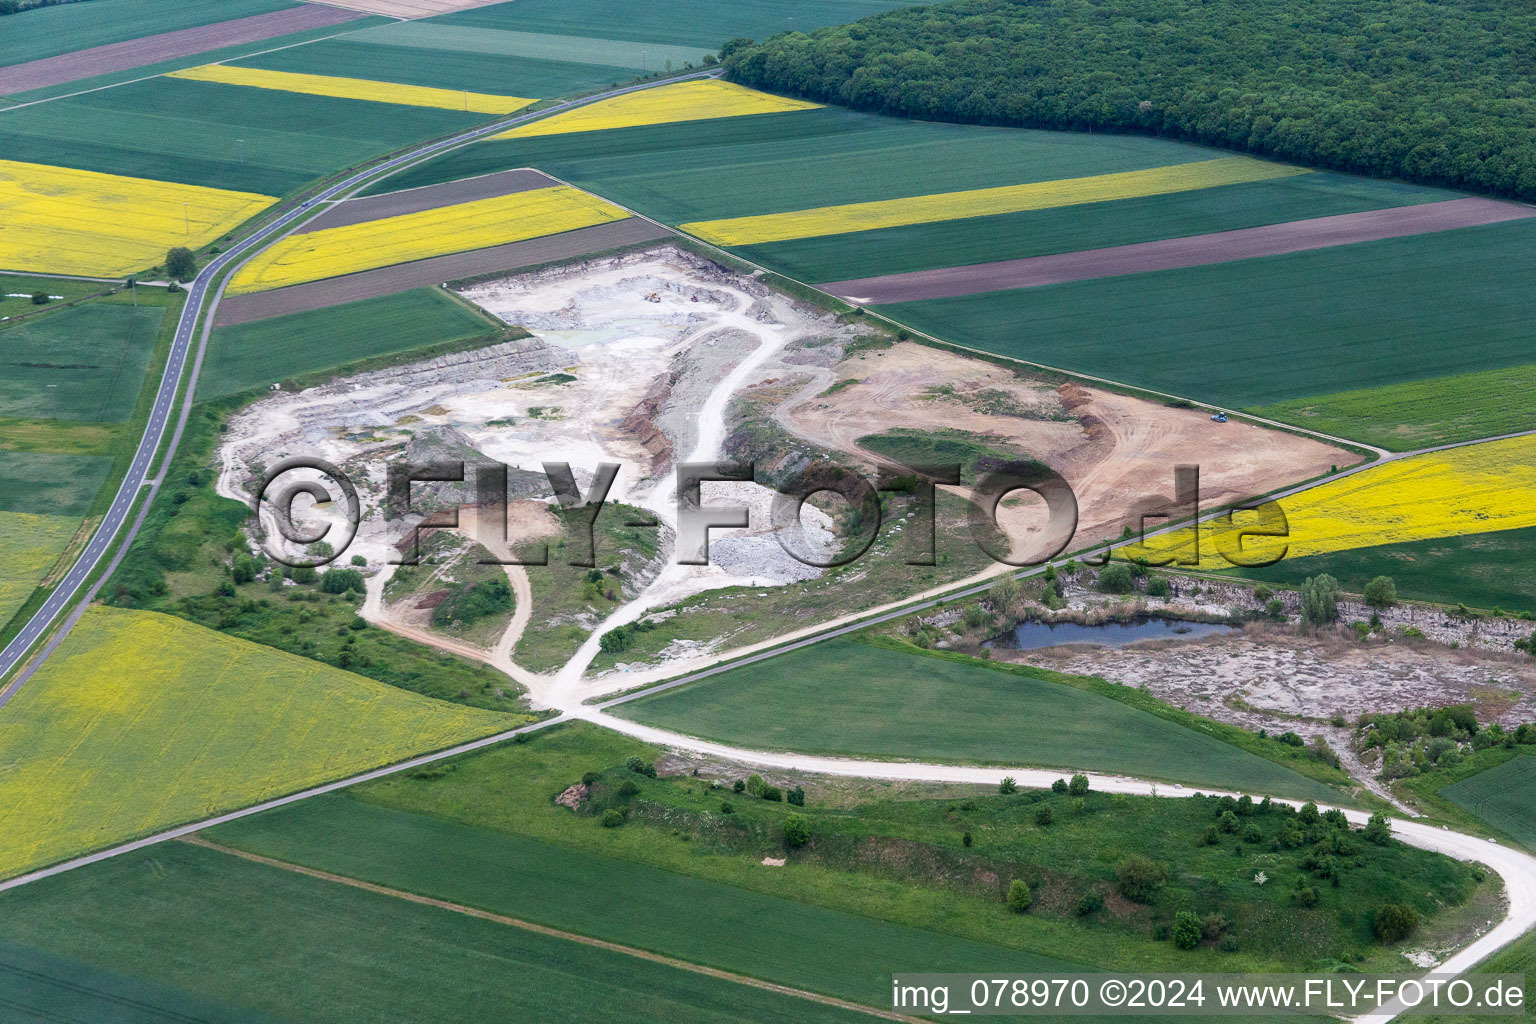 Luftbild von Kies- Tagebau des Beton- und Baustoffmischwerks in Sulzheim im Bundesland Bayern, Deutschland